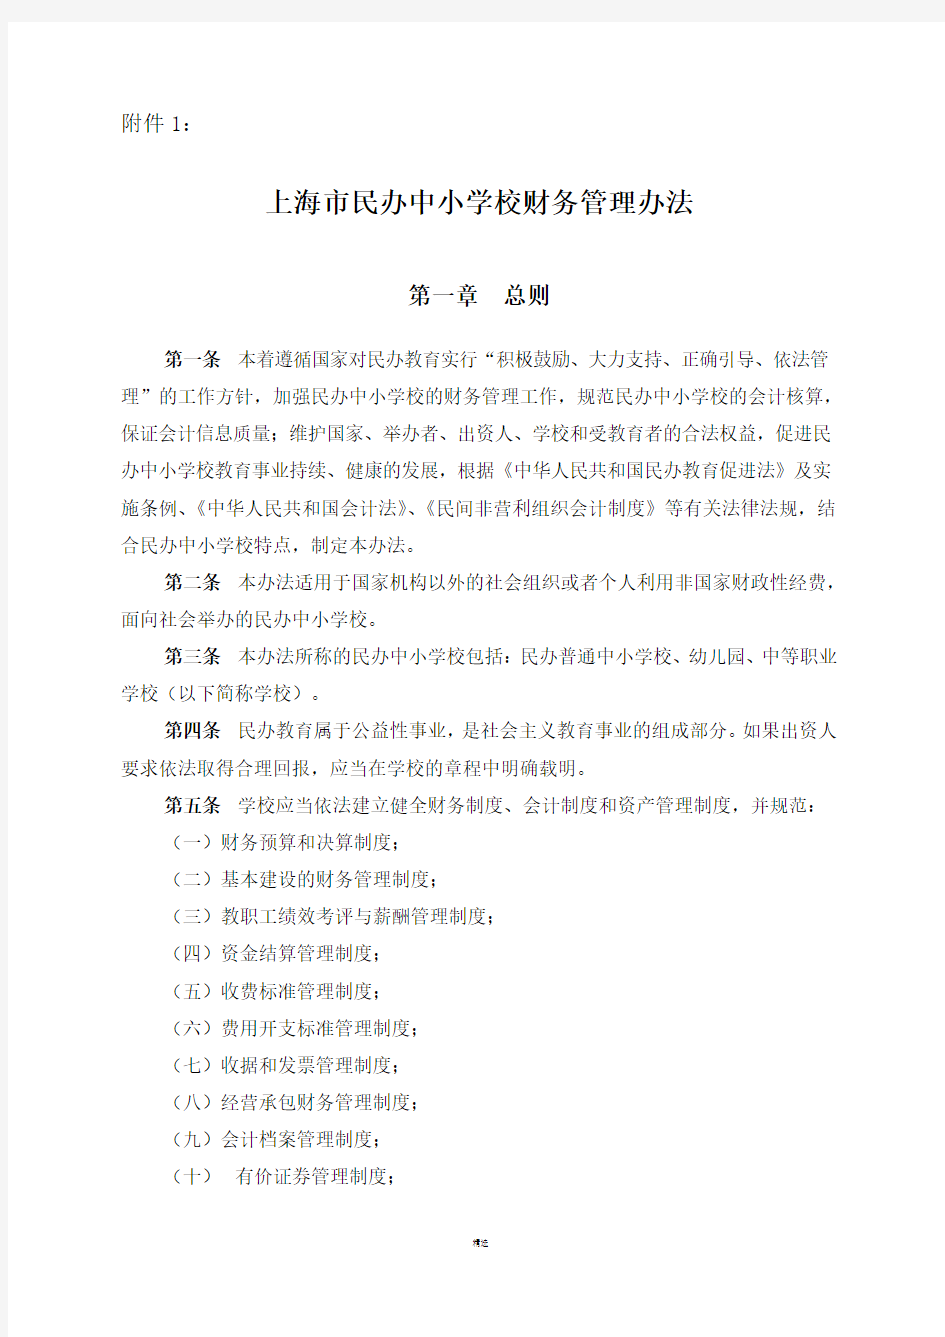 上海民办中小学校财务管理办法